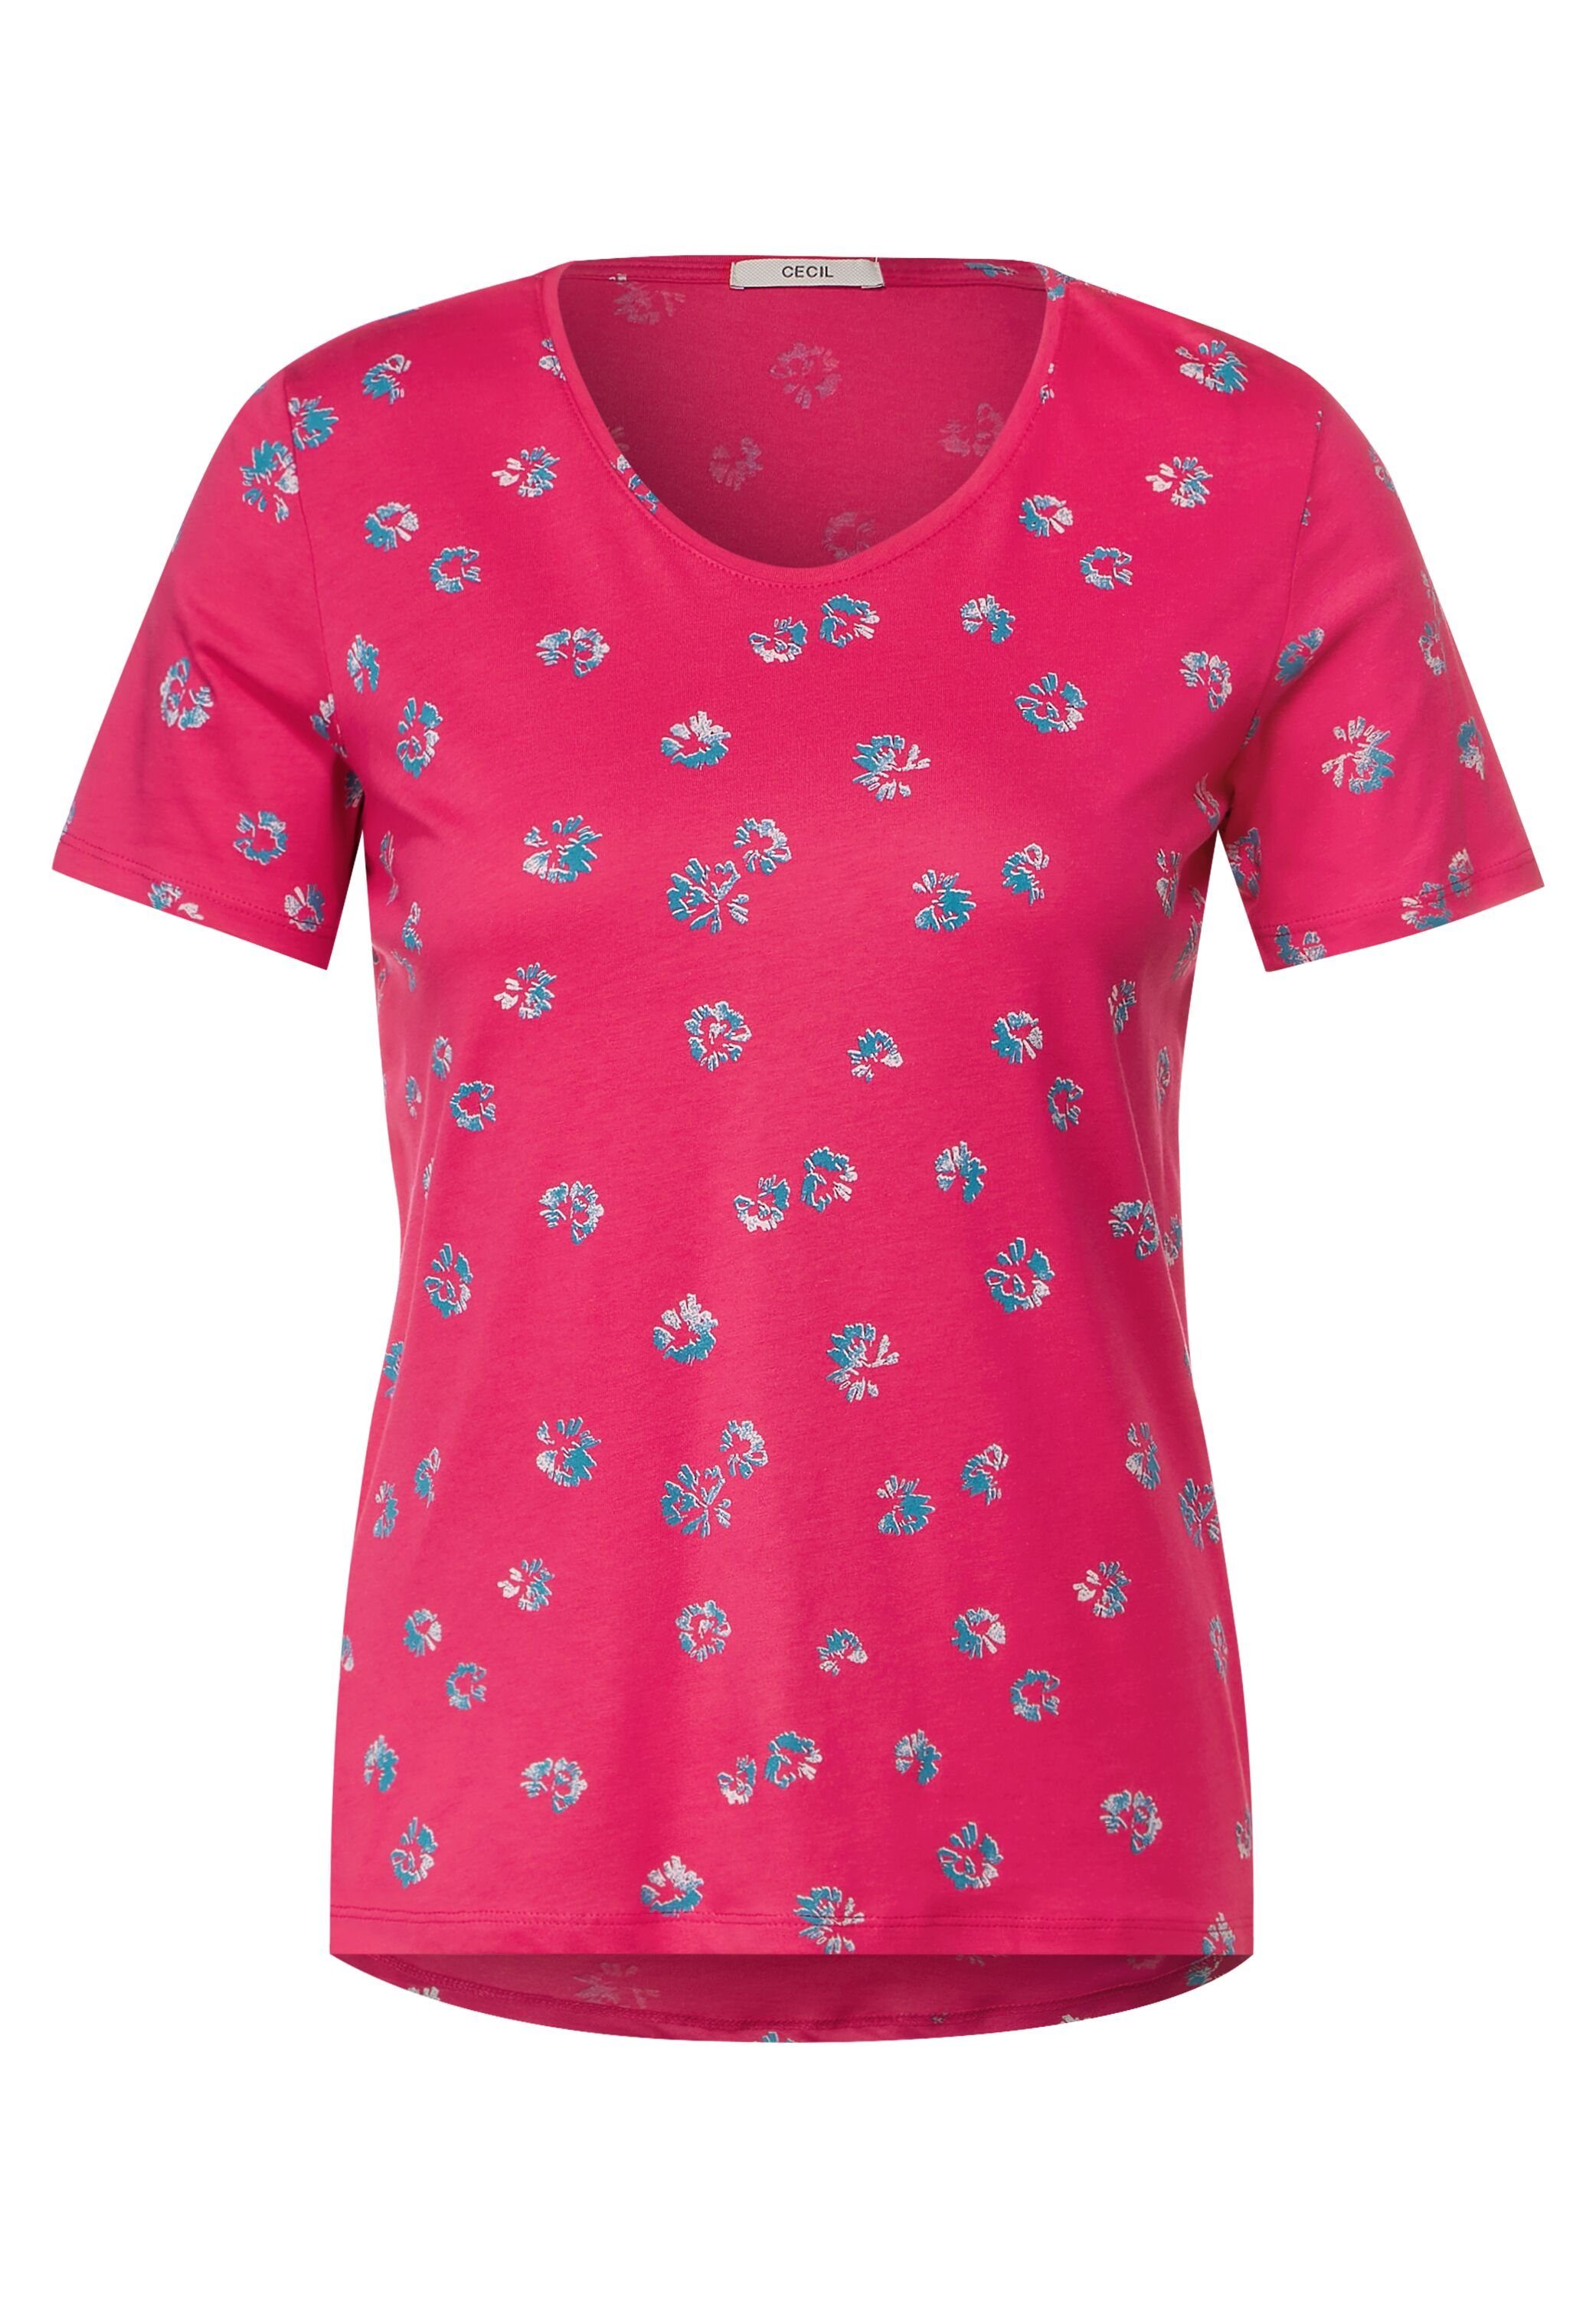 Cecil T-Shirt aus fresh softem pink Materialmix